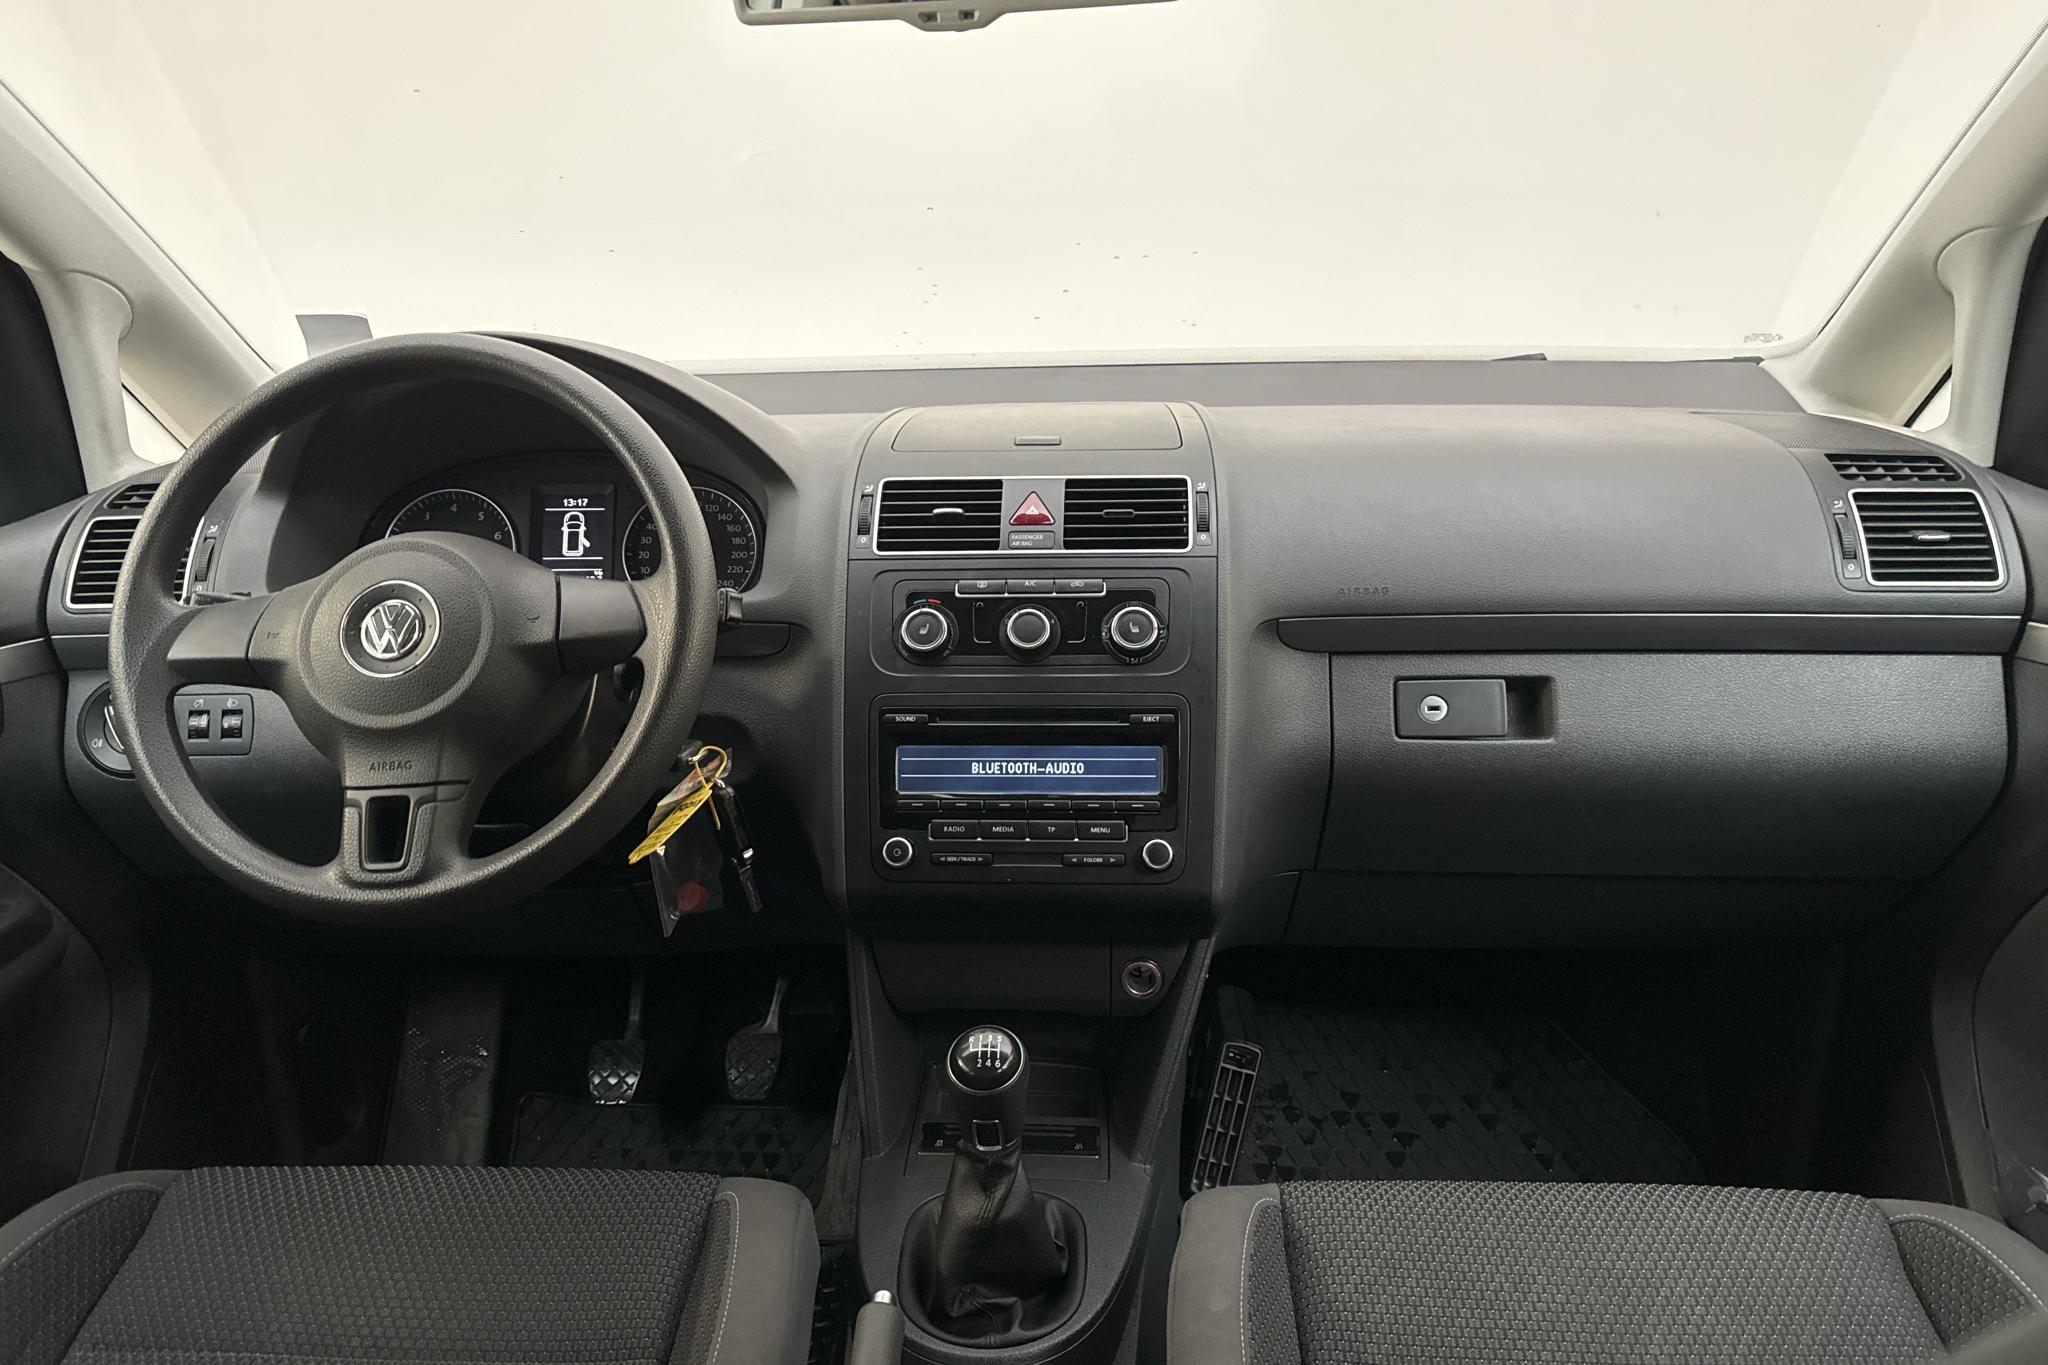 VW Touran 1.4 TGI EcoFuel (150hk) - 7 546 mil - Manuell - vit - 2015